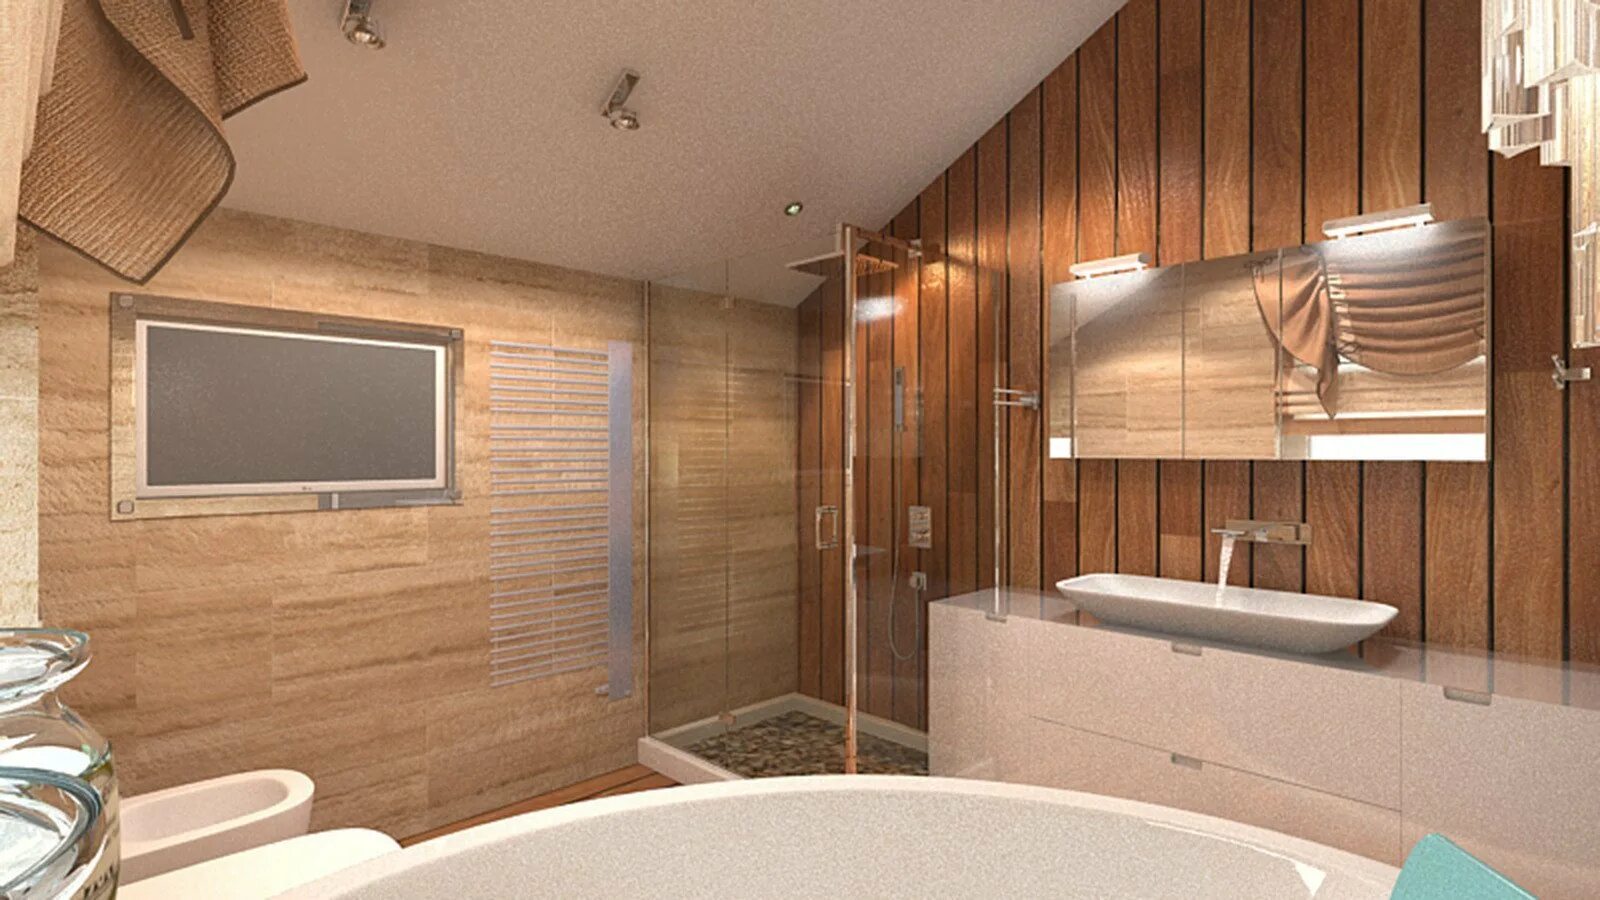 Панели дерево ванной. Деревянные панели в ванной комнате. Планкен в ванной комнате. Лиственница в интерьере ванной. Панели для ванной под дерево.